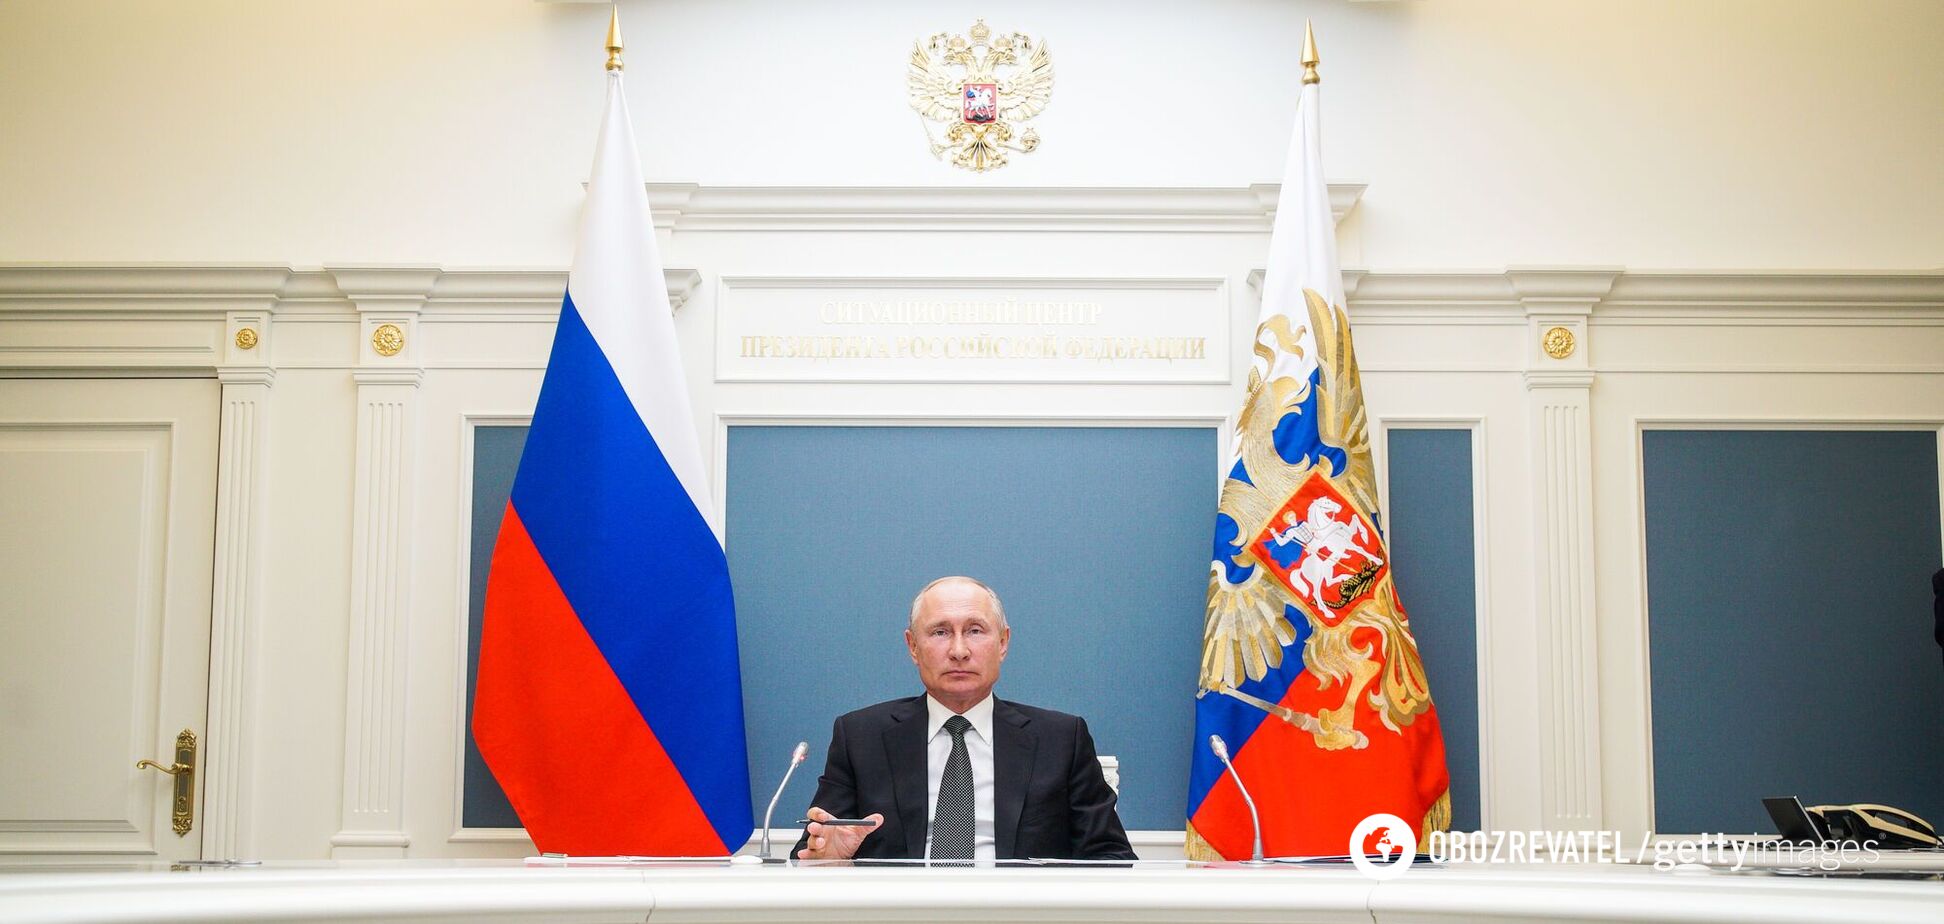 Останнім часом почастішали чутки про погане здоров'я російського президента Володимира Путіна